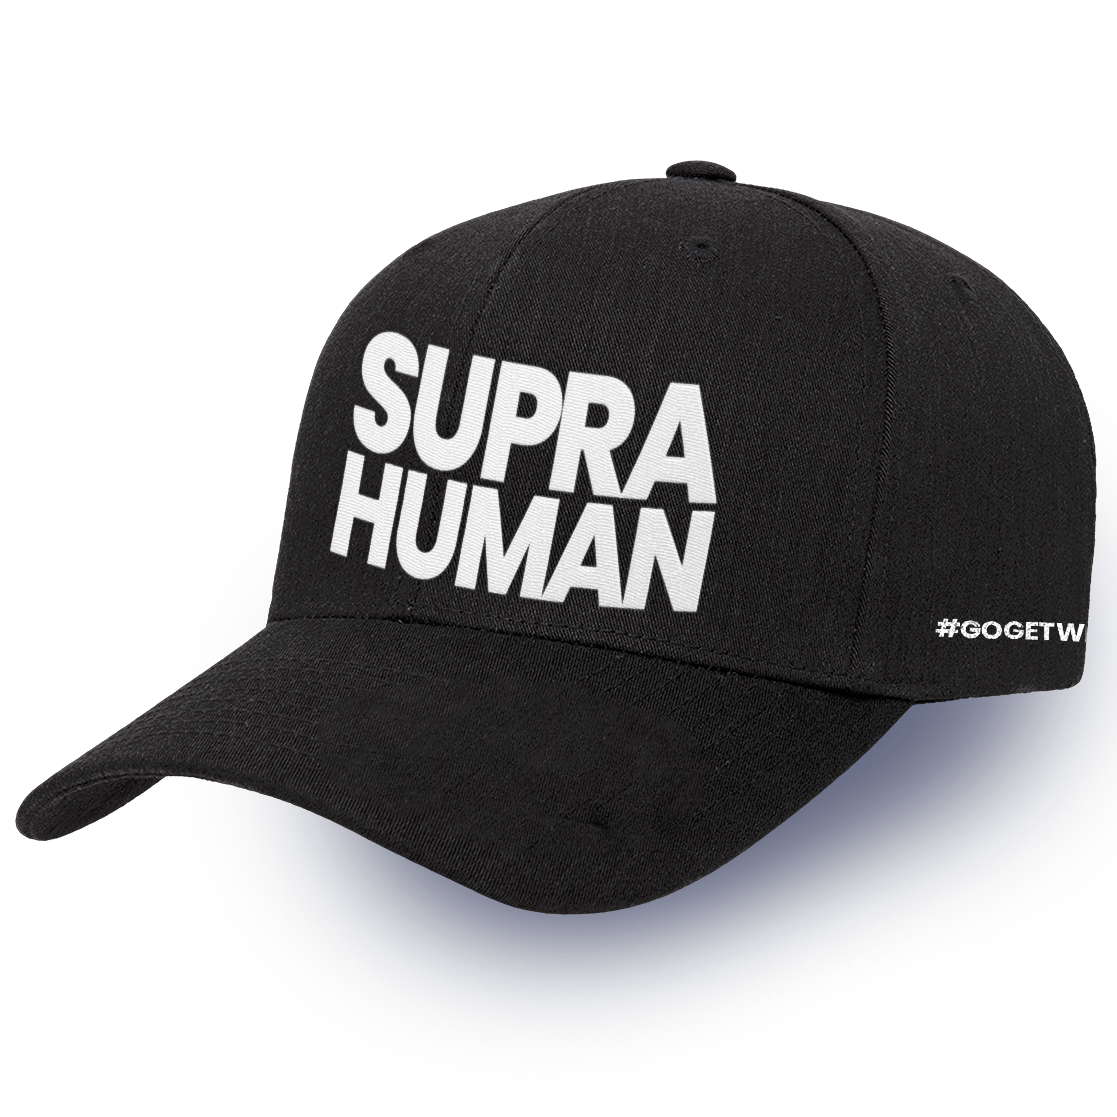 Supra Human Hat